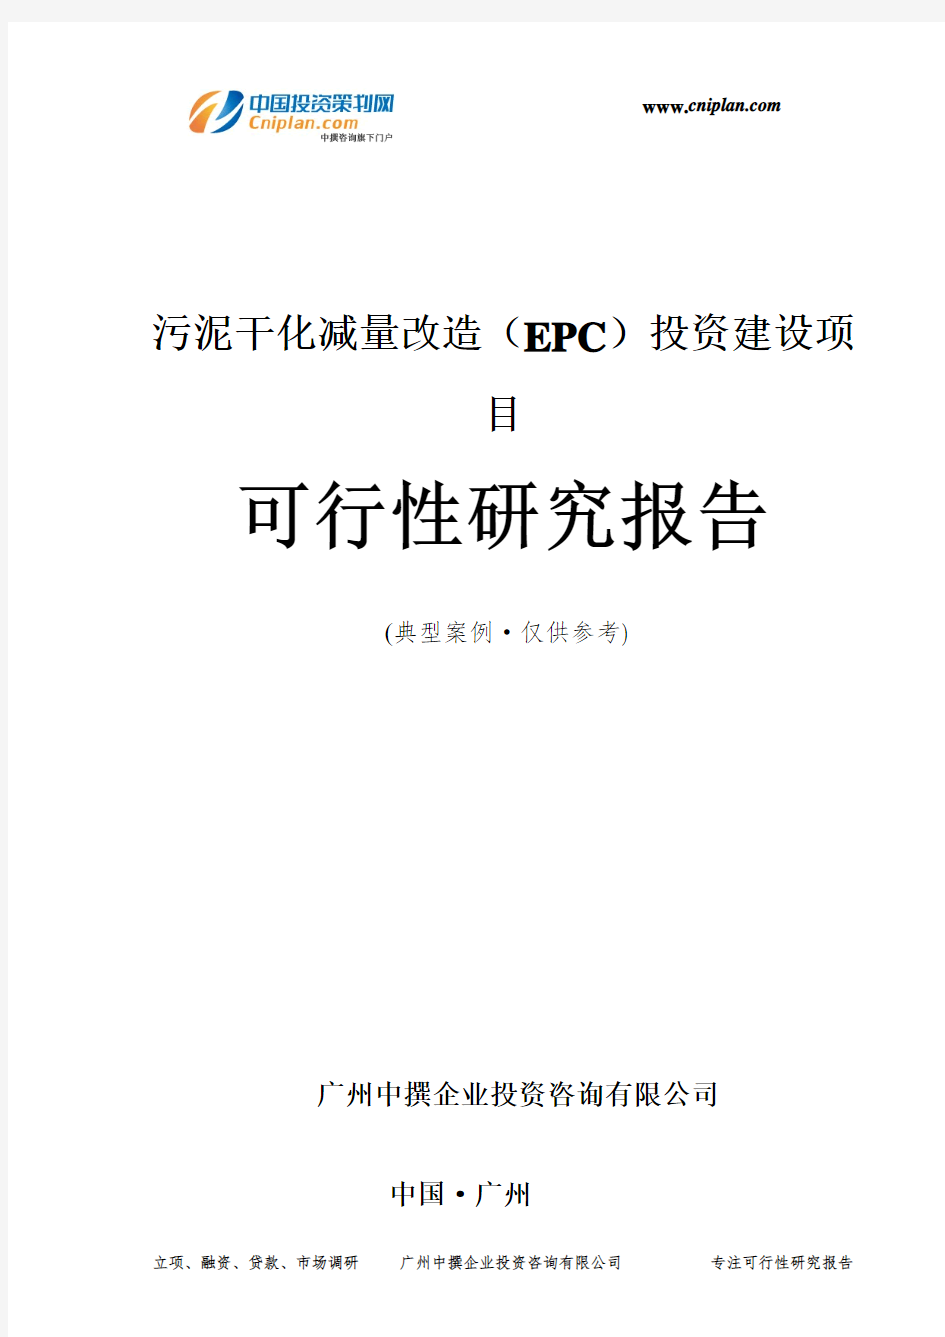 污泥干化减量改造(EPC)投资建设项目可行性研究报告-广州中撰咨询